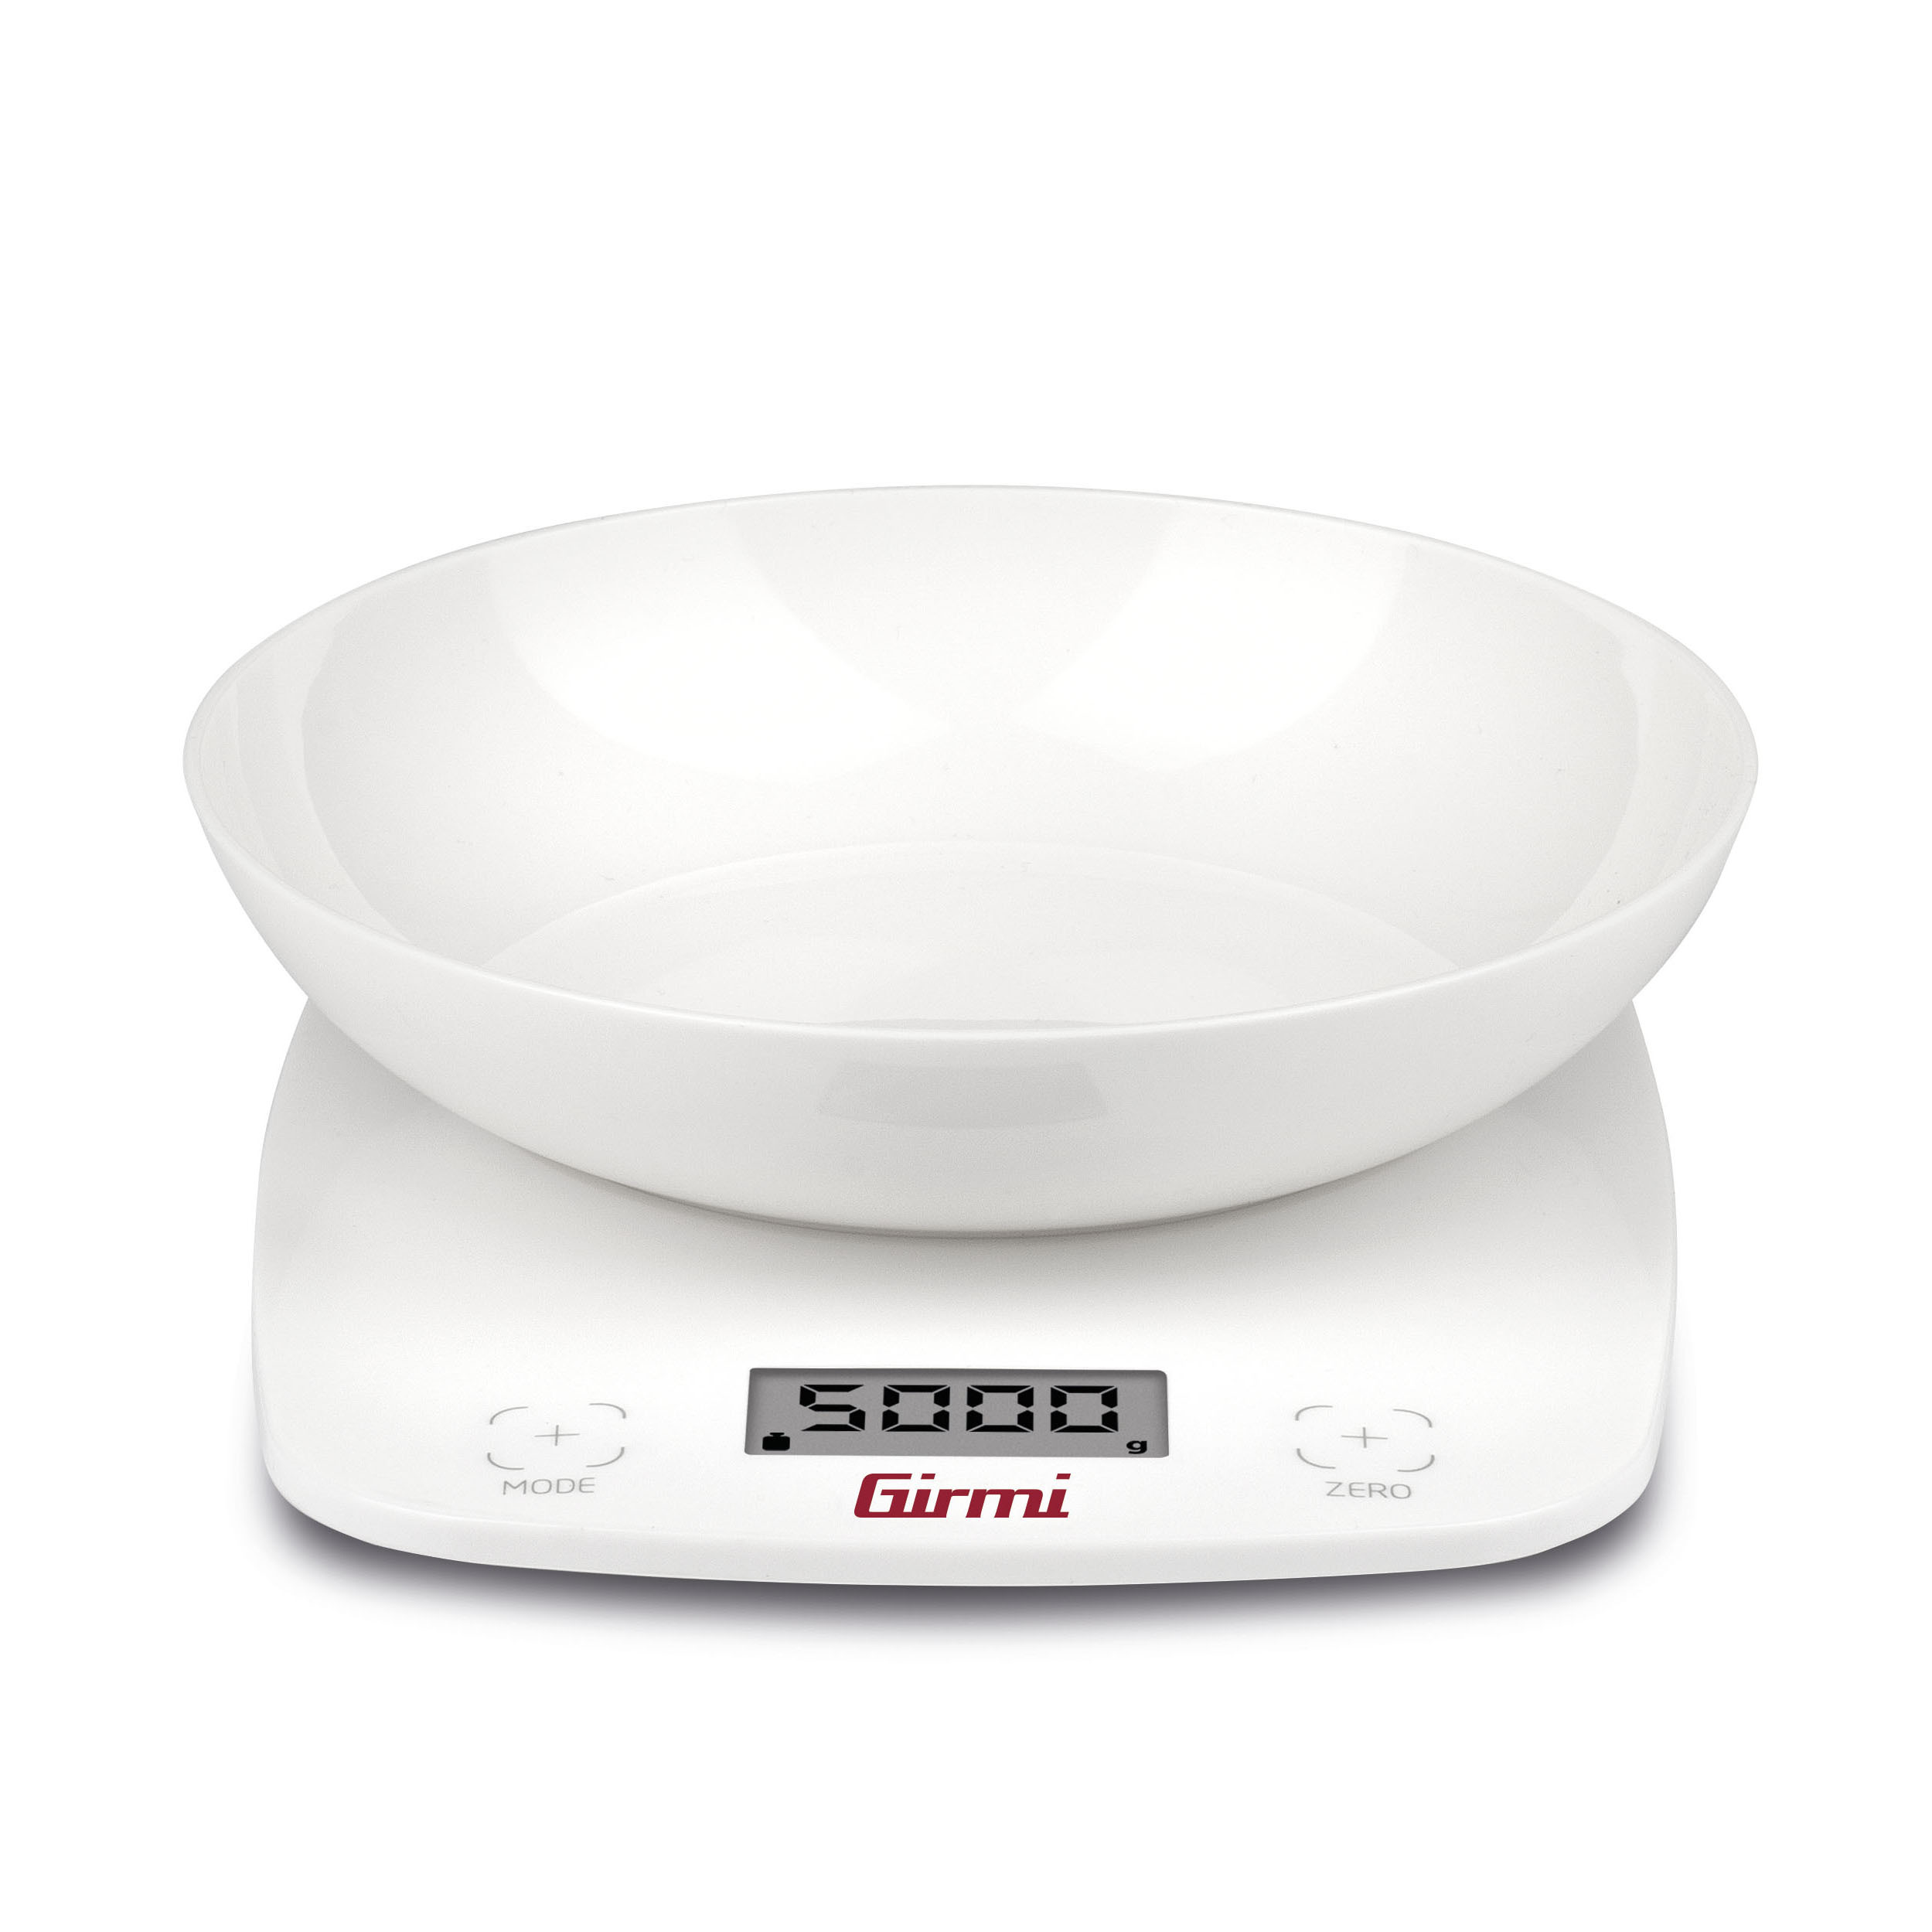 Perel Bilancia da Cucina Digitale 5 kg Bianca